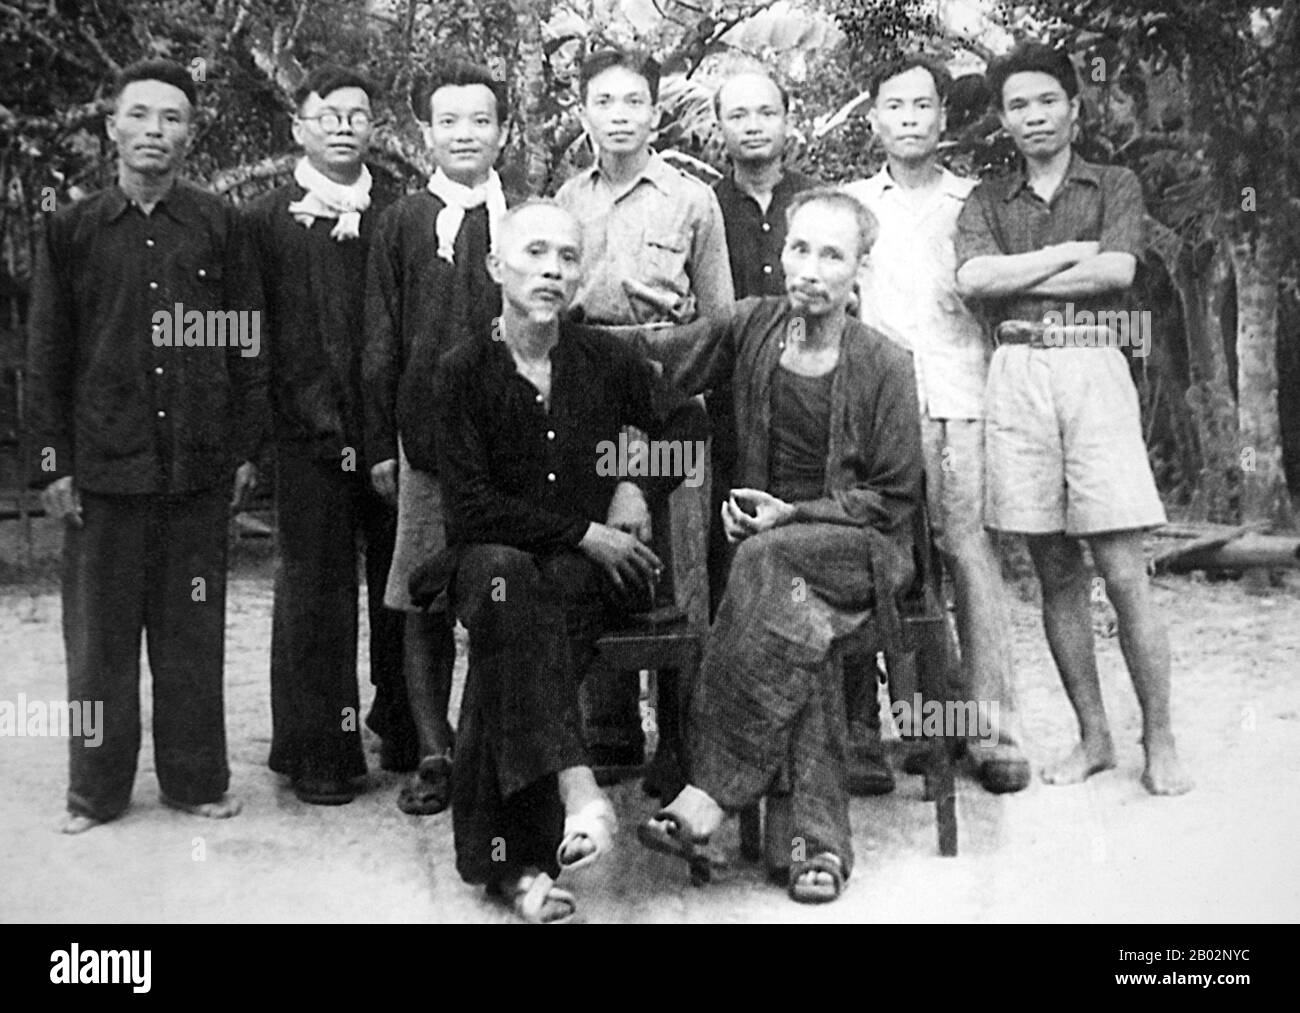 Hồ Chí Minh, né à Nguyễn Sinh Cung et également connu sous le nom de Nguyễn Ái Quốc (19 mai 1890 – 3 septembre 1969) était un leader révolutionnaire communiste vietnamien qui était Premier ministre (1946–1955) et président (1945–1969) de la République démocratique du Vietnam (Nord Vietnam). Il a formé la République démocratique du Vietnam et dirigé le Viet Cong pendant la guerre du Vietnam jusqu'à sa mort. Hồ a dirigé le mouvement d'indépendance du Viet Minh à partir de 1941, établissant la République démocratique du Vietnam gouvernée par les communistes en 1945 et battant l'Union française en 1954 à Dien bien Phu. Il a perdu le pouvoir politique à l'intérieur de non Banque D'Images